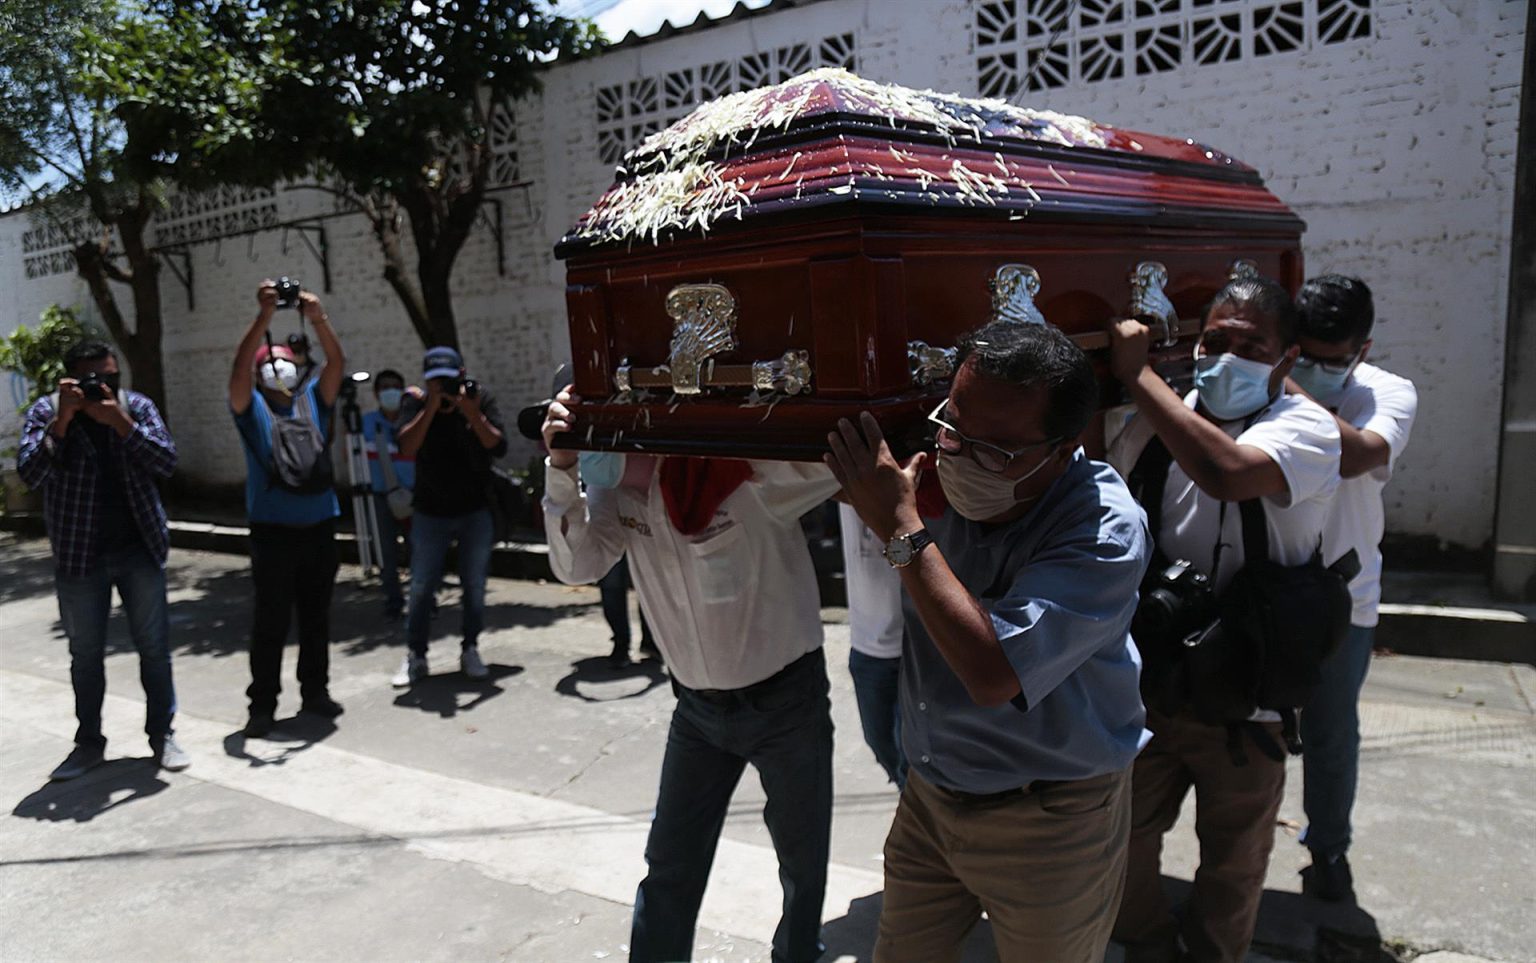 Familiares y amigos asisten al funeral del periodista mexicano asesinado Fredy Román Román hoy, en el municipio de Chilpancingo, estado de Guerrero (México).
 EFE/Jose Luis de la Cruz